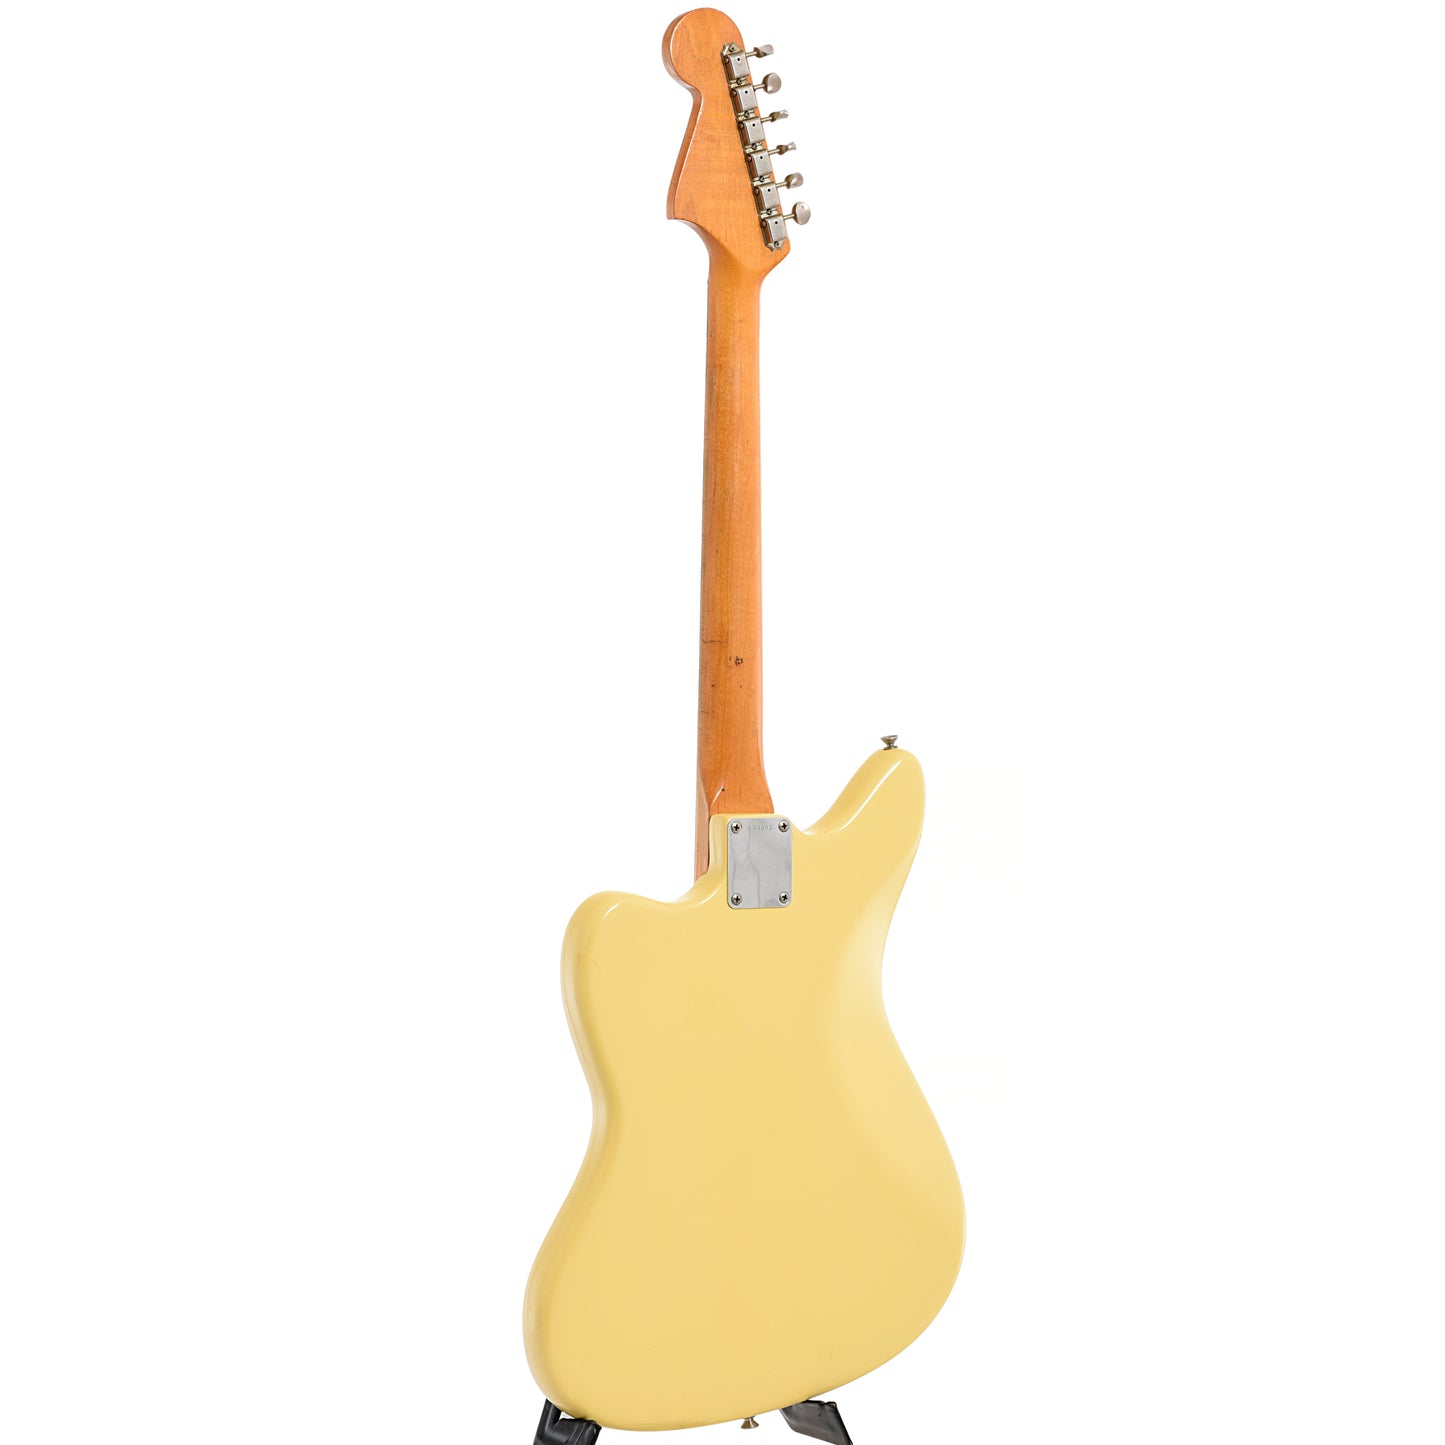 Full back and side of Fender Jaguar Electric Guitar (1965)